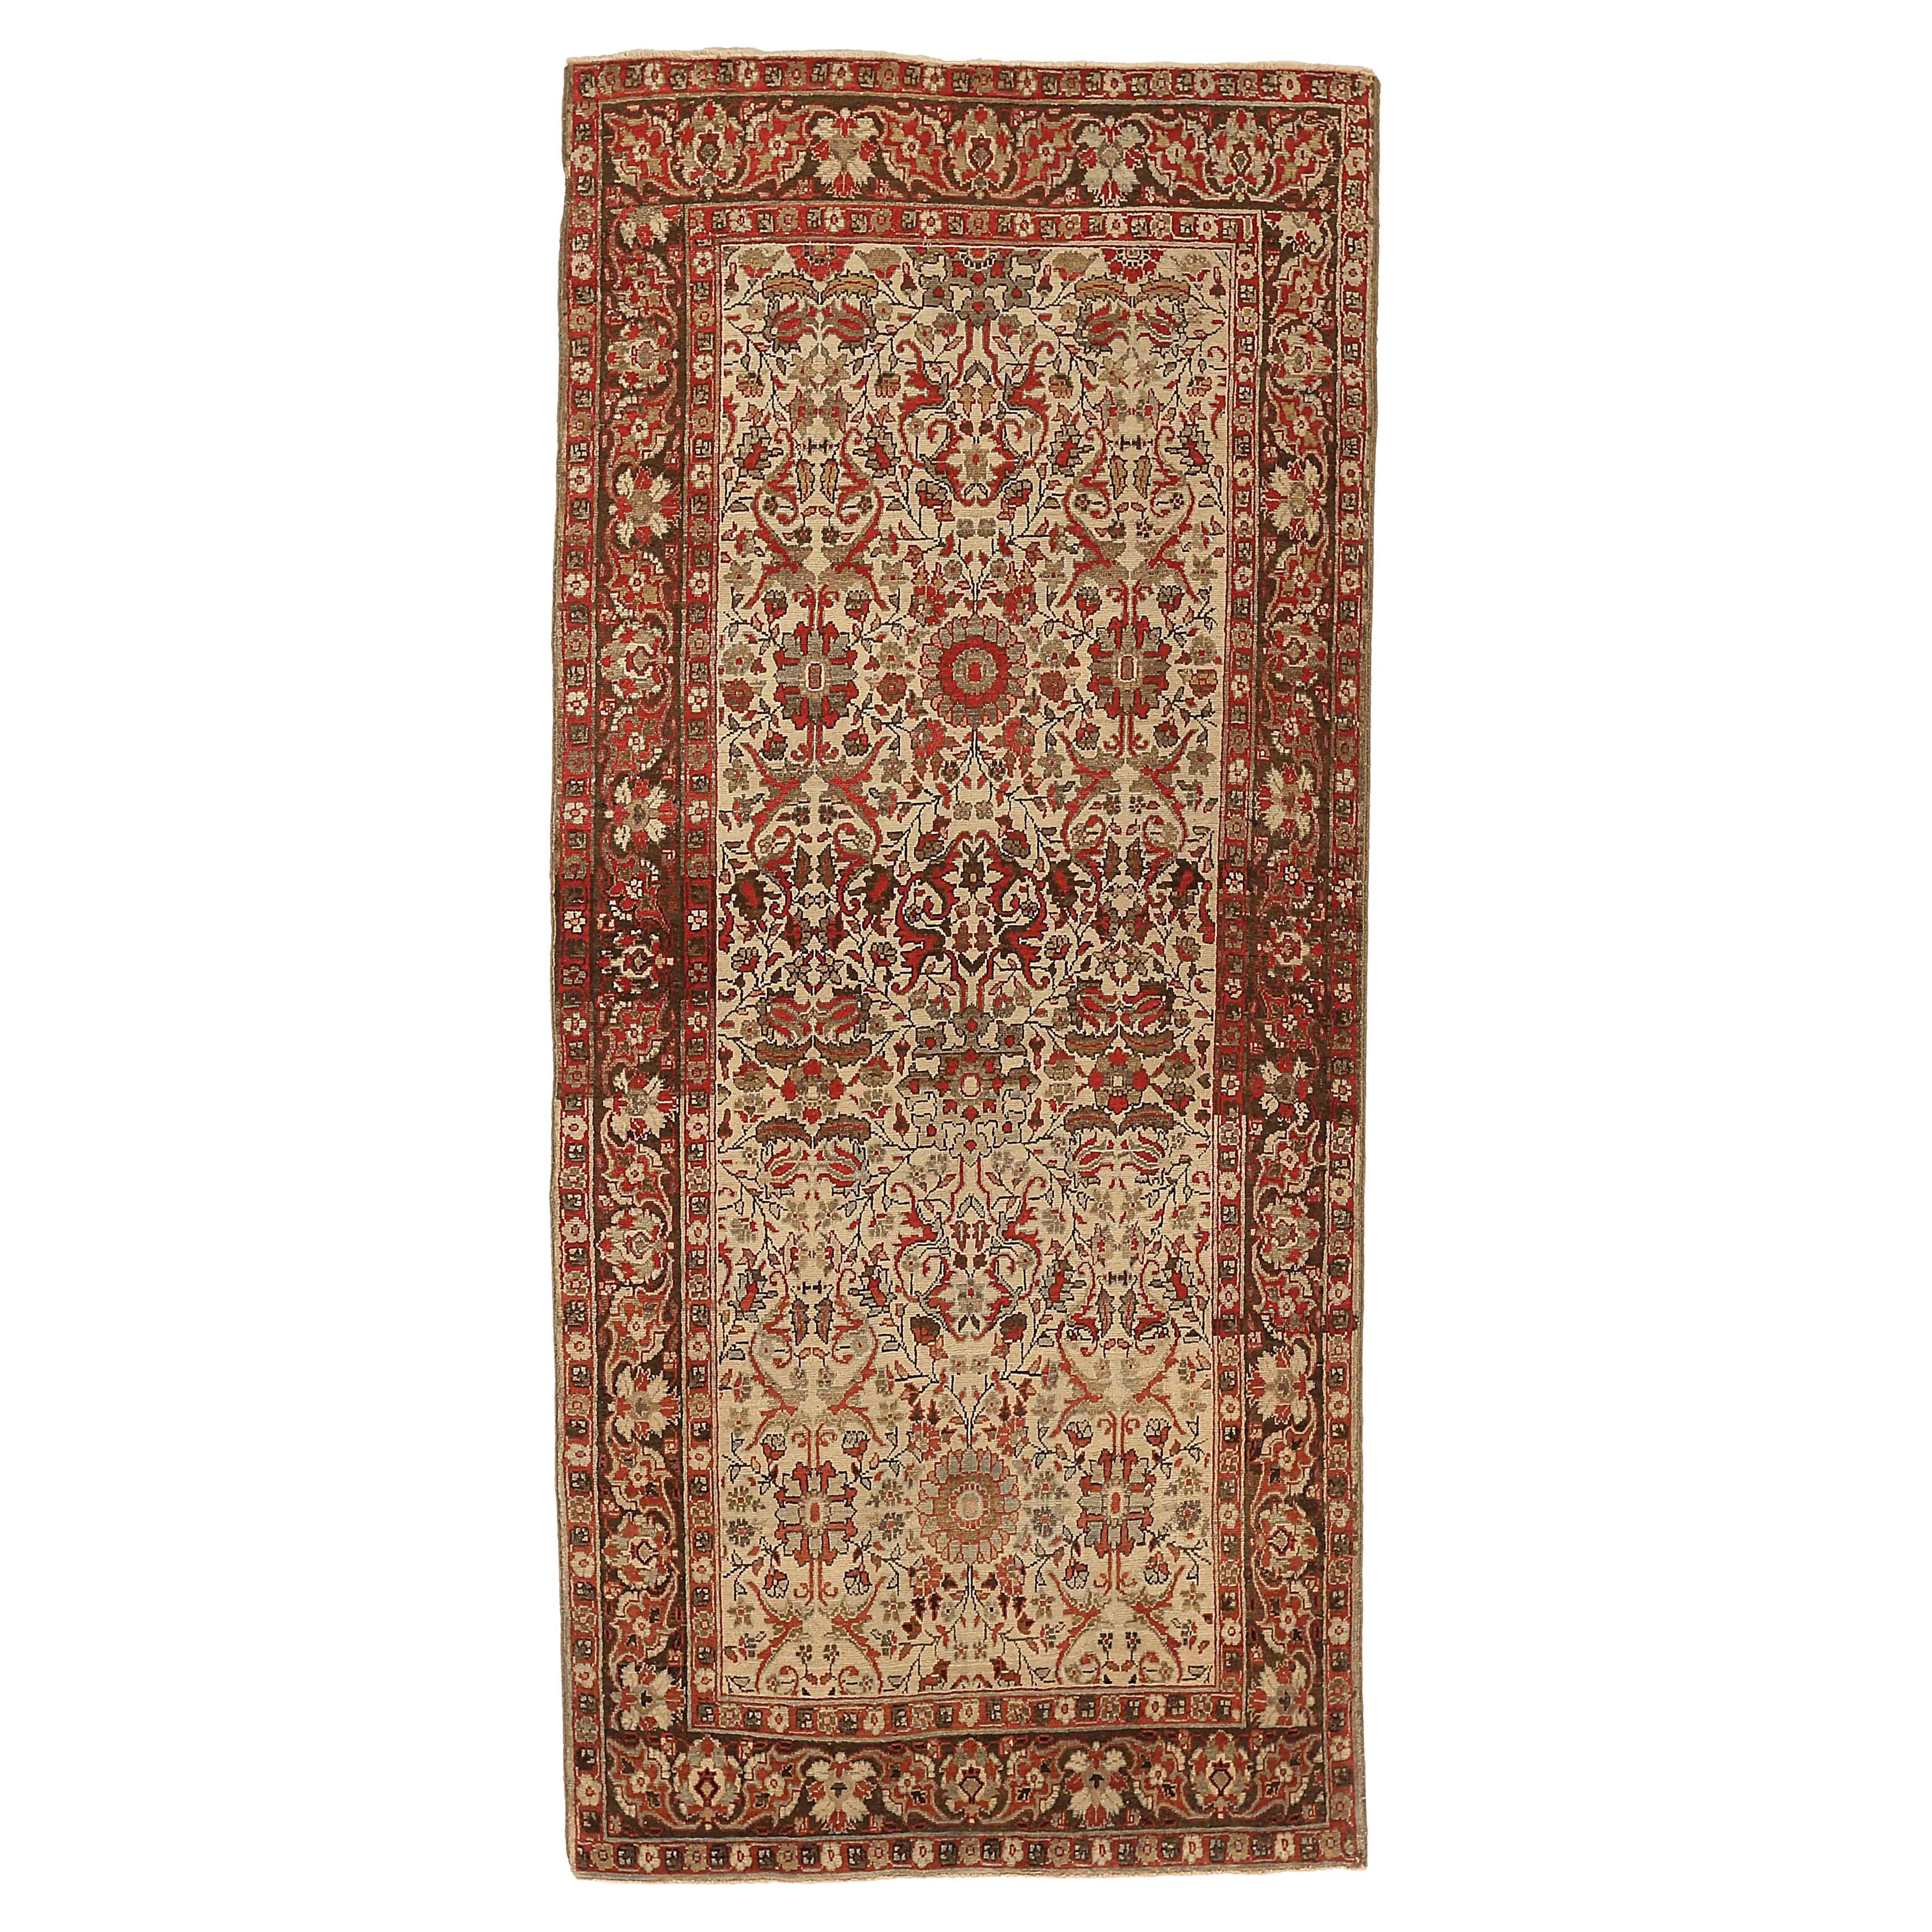 Antiker indischer Teppich im Agra-Design